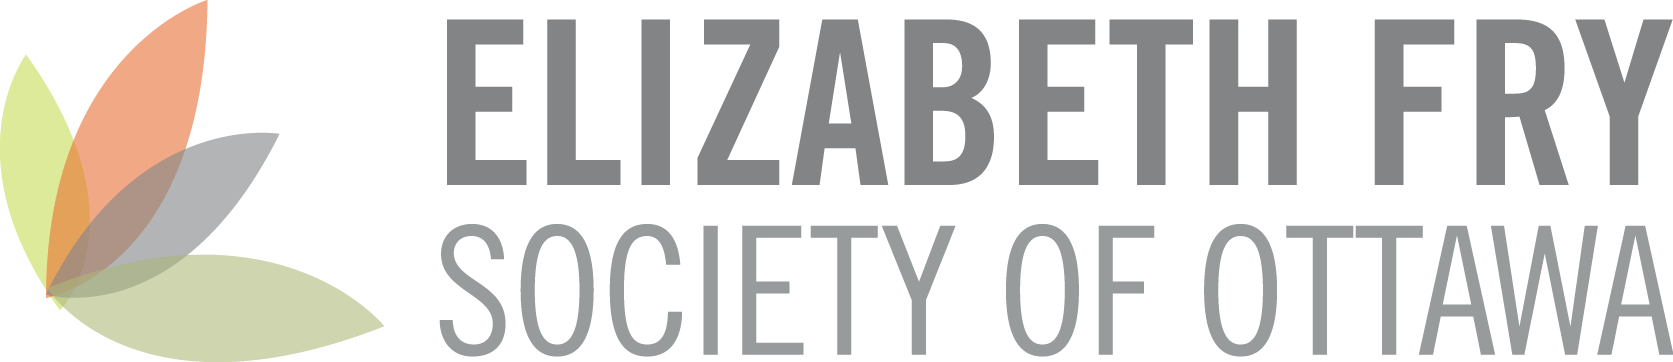 Elizabeth Fry Society